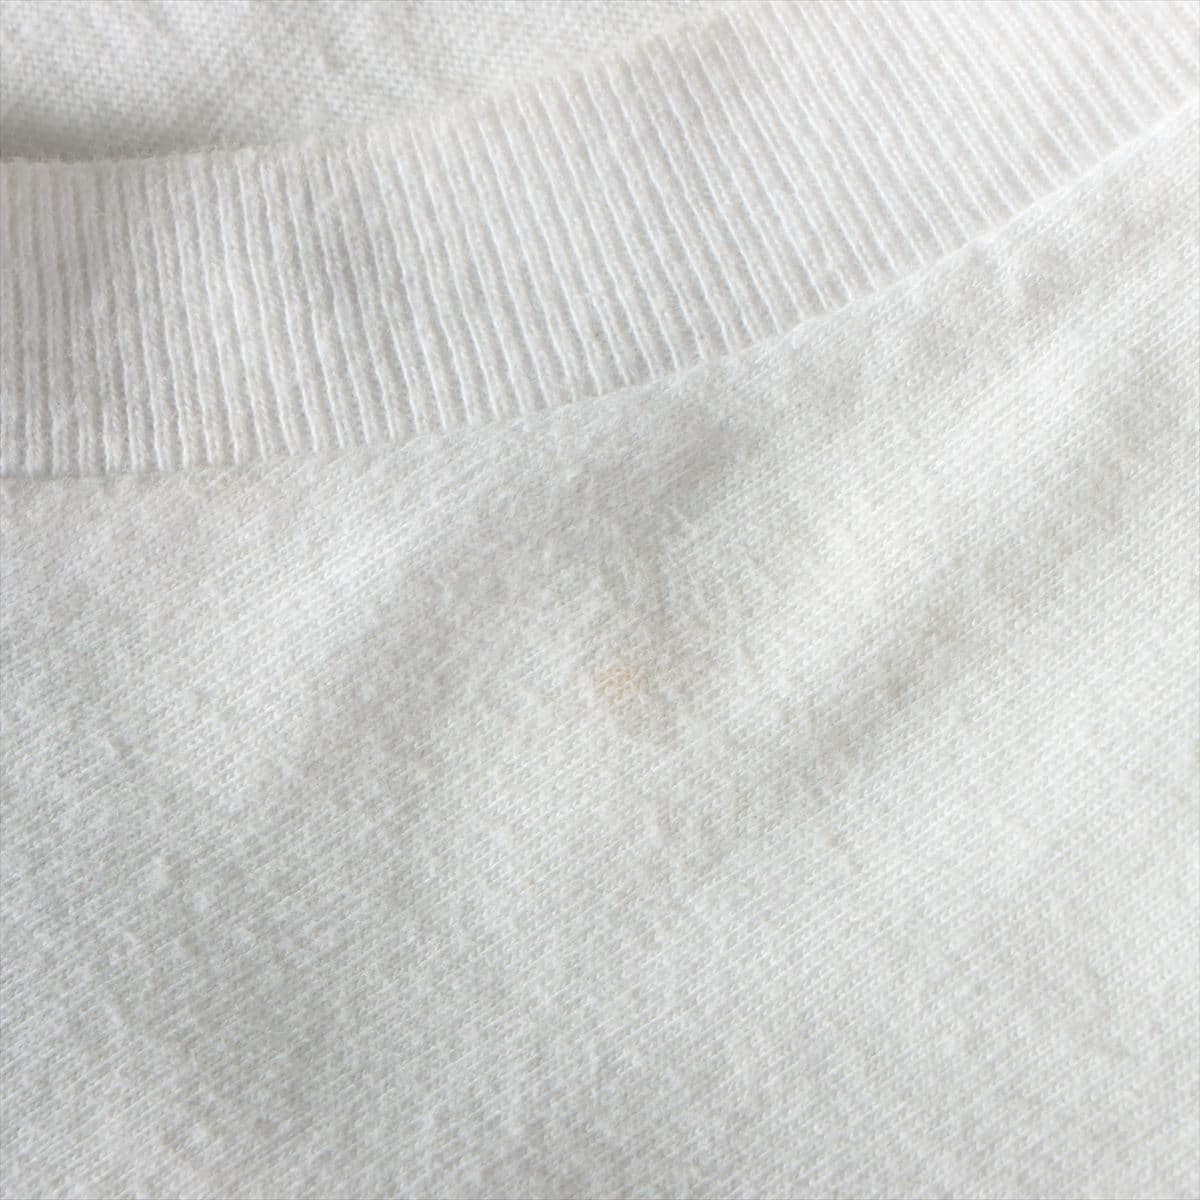 シュプリーム ボックスロゴ 15SS コットン Tシャツ S メンズ ホワイト